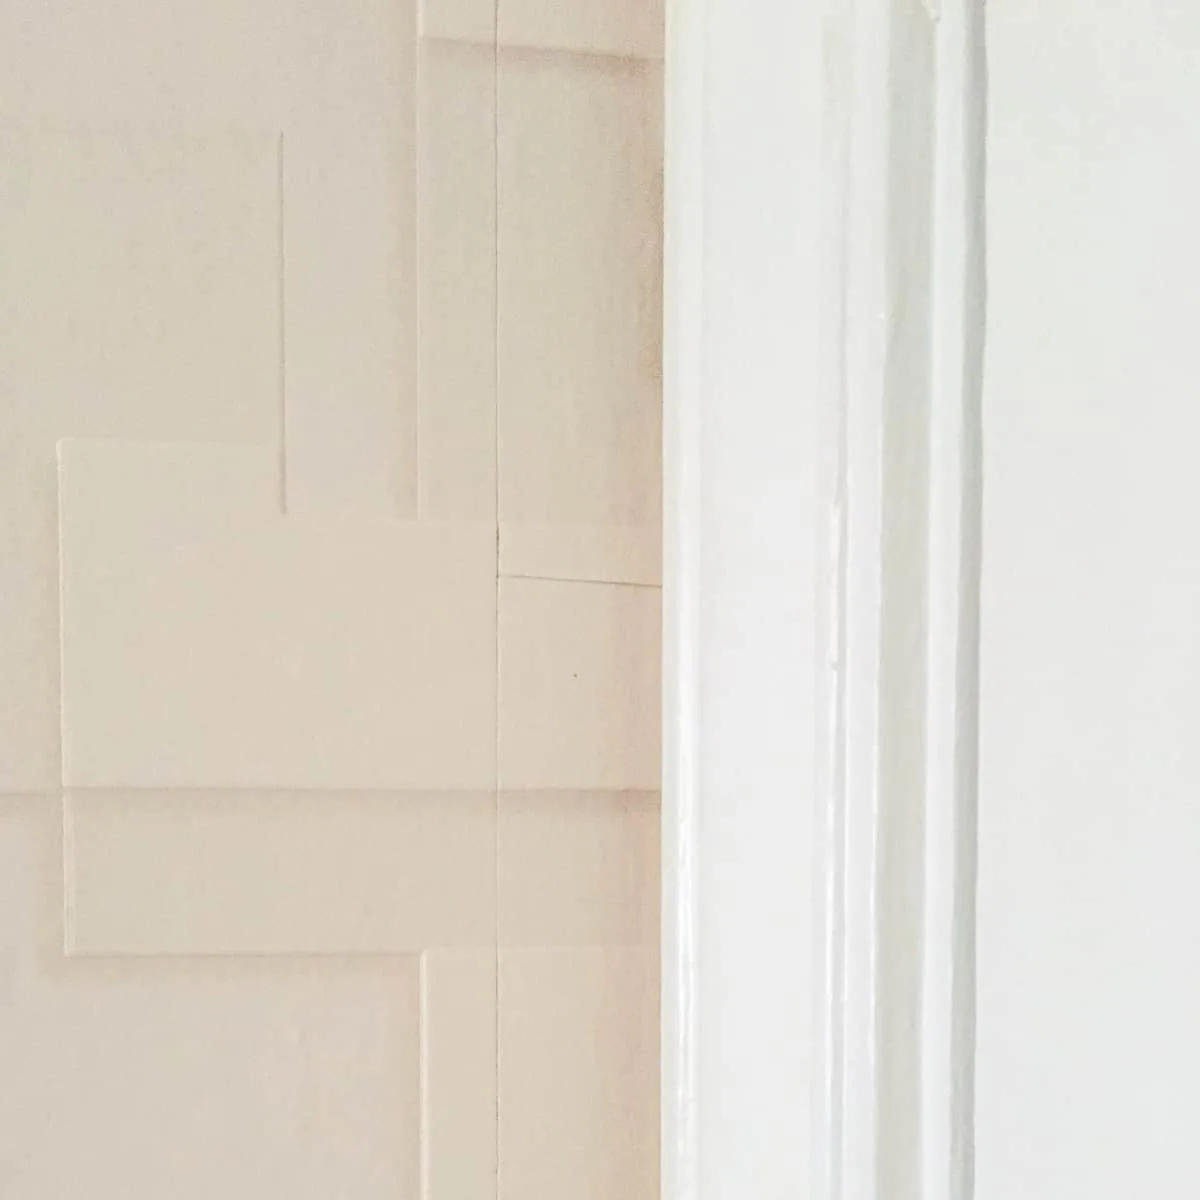 textured wallpaper behind door trim